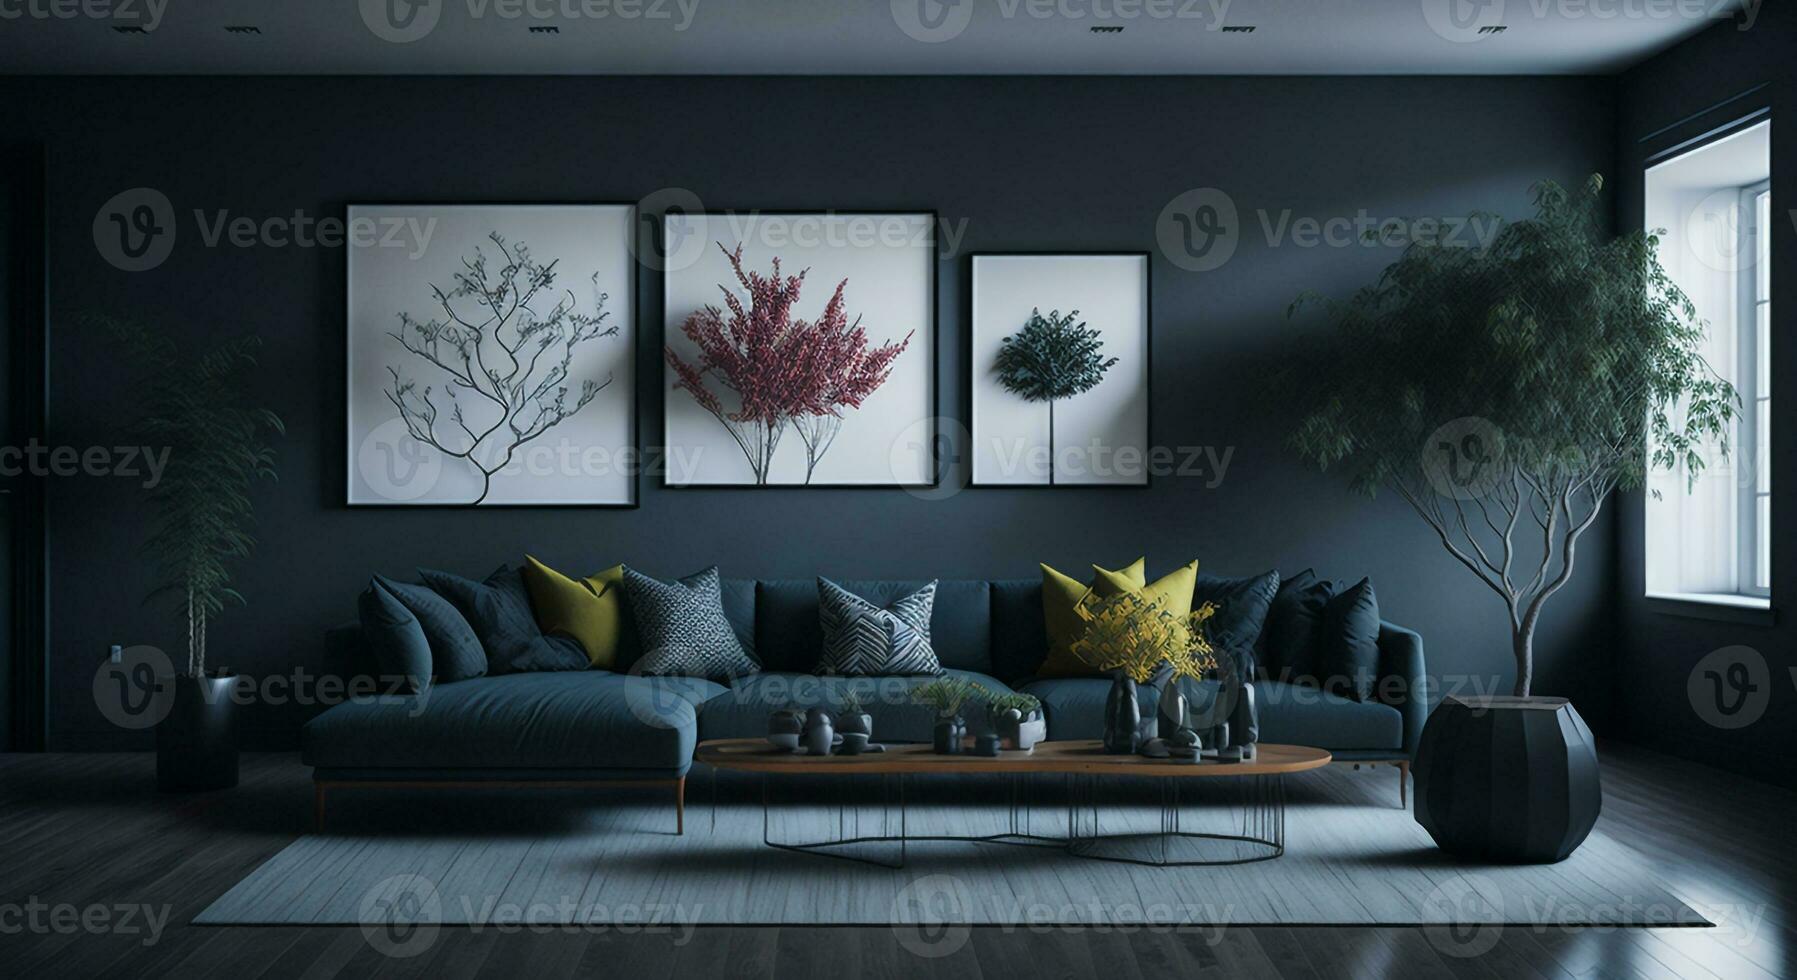 leven kamer interieur ontwerp met sofa en stoel en bloemen Aan tafel en mockups poster van bloemen foto